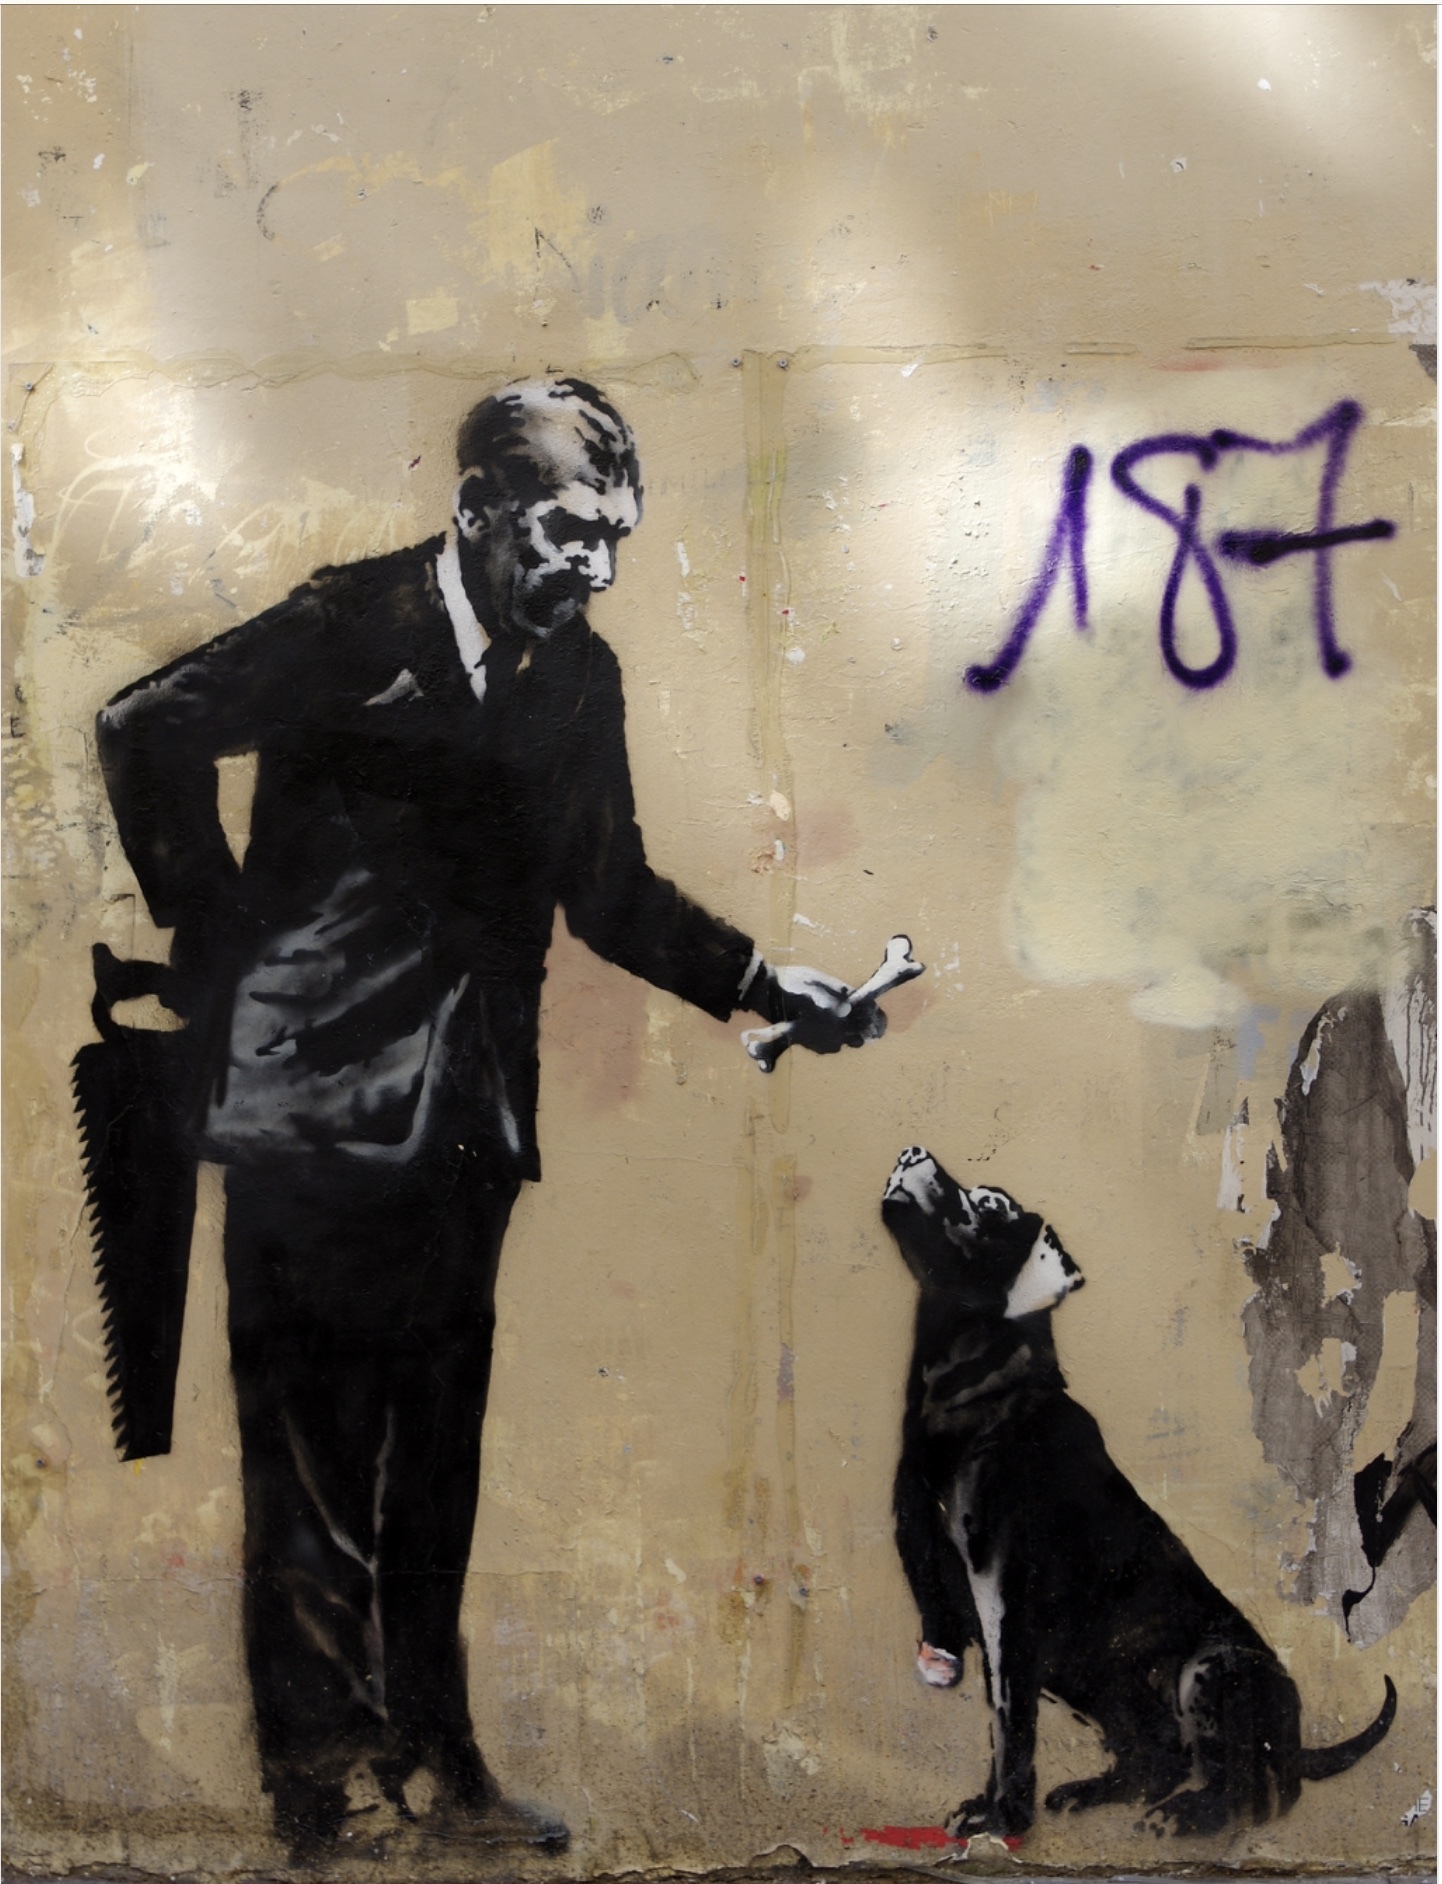 Graffiti 5160 Banksy et A2 de A2 capturé par Artparis à Paris France